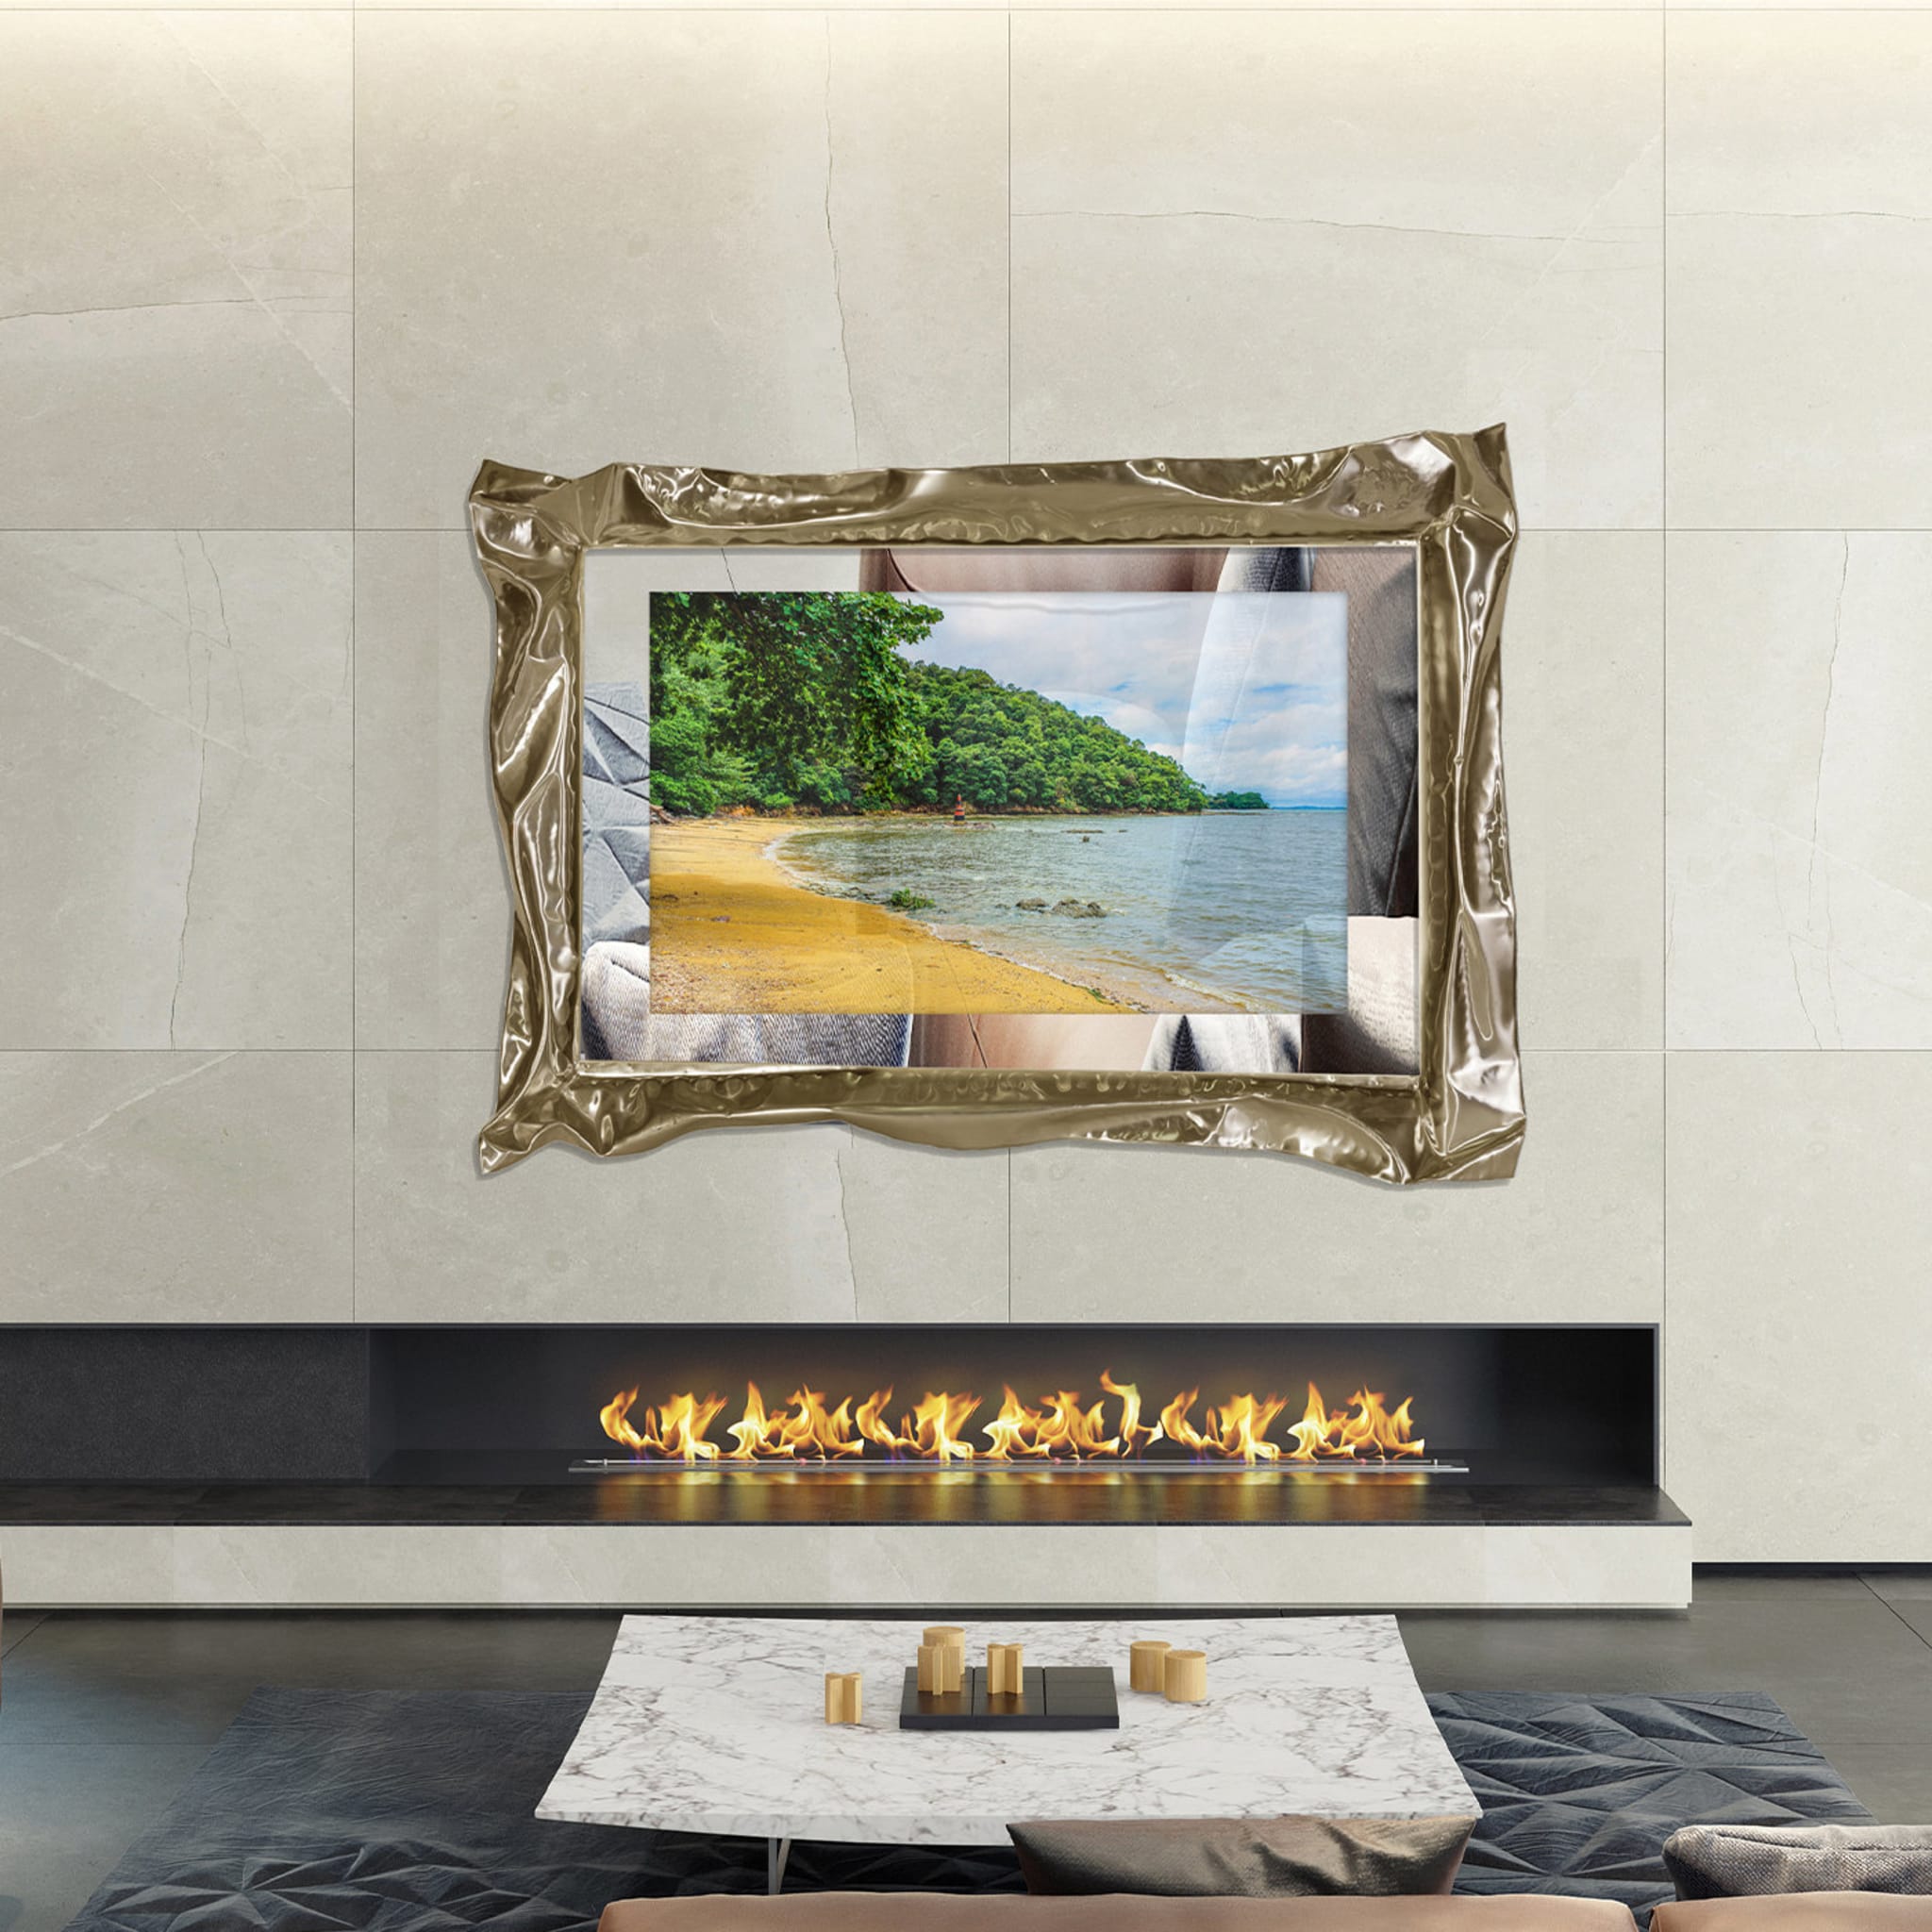 Onde Sand Mirror TV by Marco Mazzei - Alternative view 1